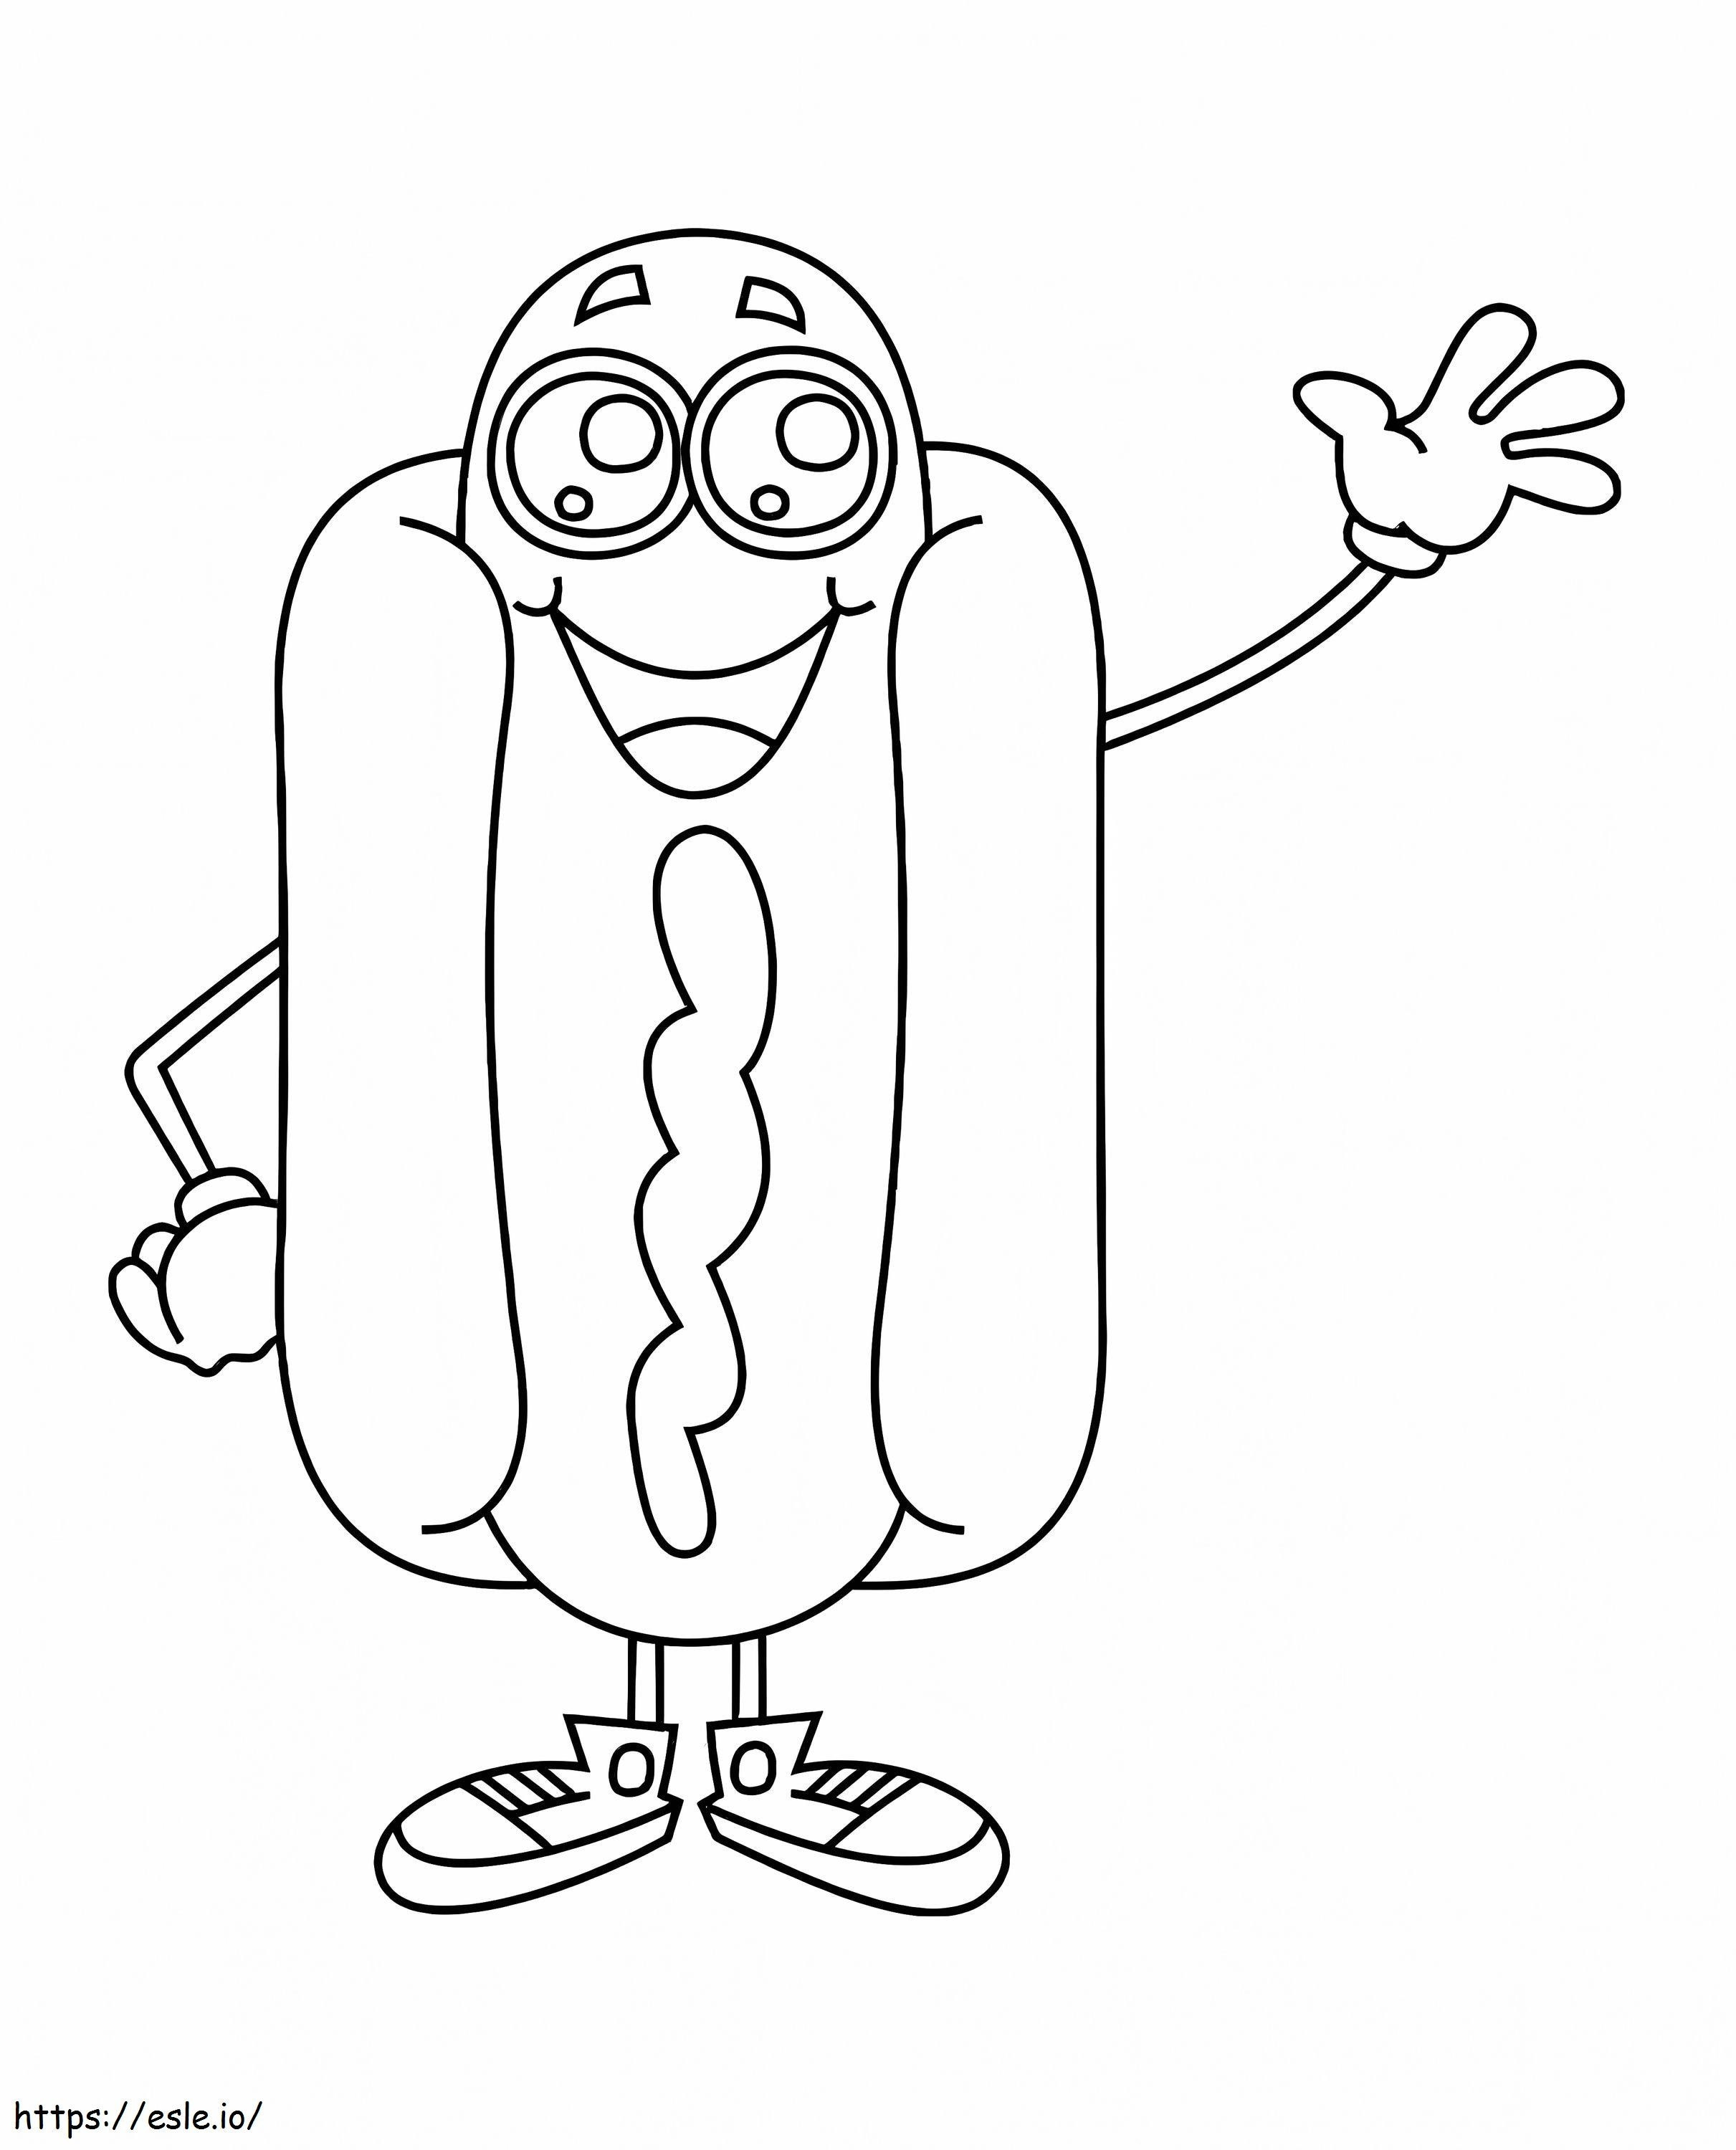 Hot Dog Kawaii coloring page